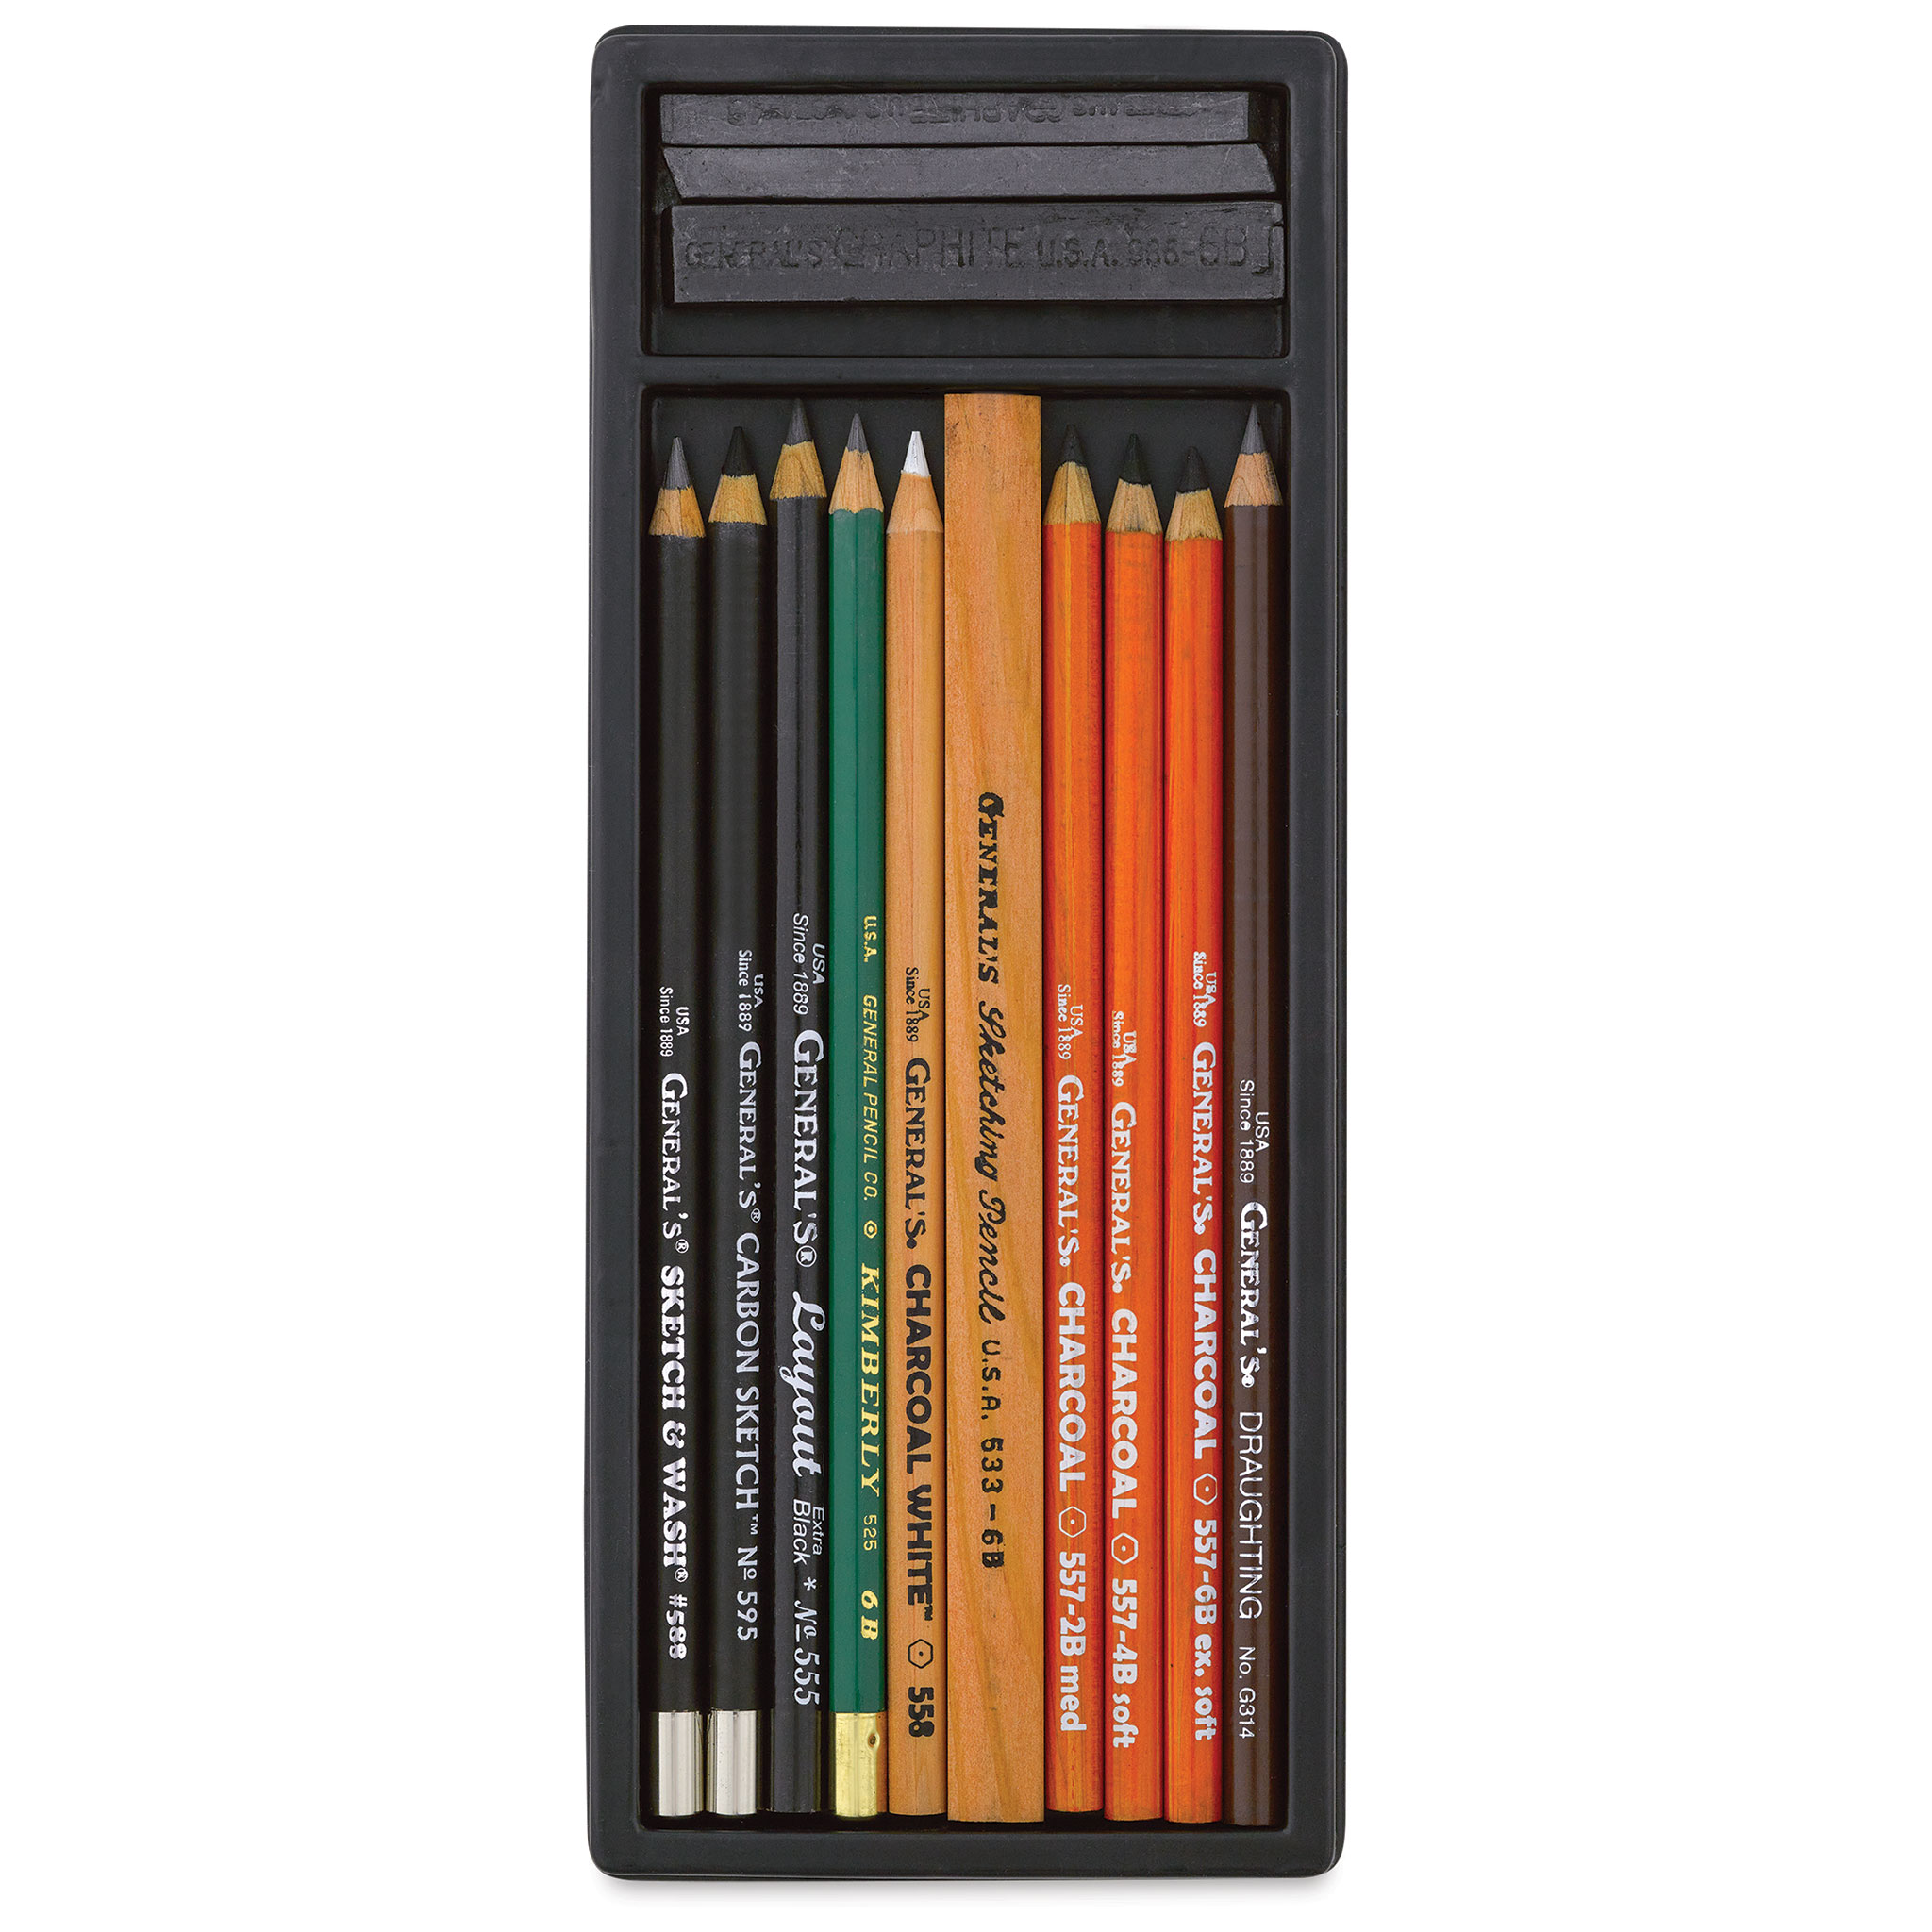 General Pencil - Charcoal Pencil Set